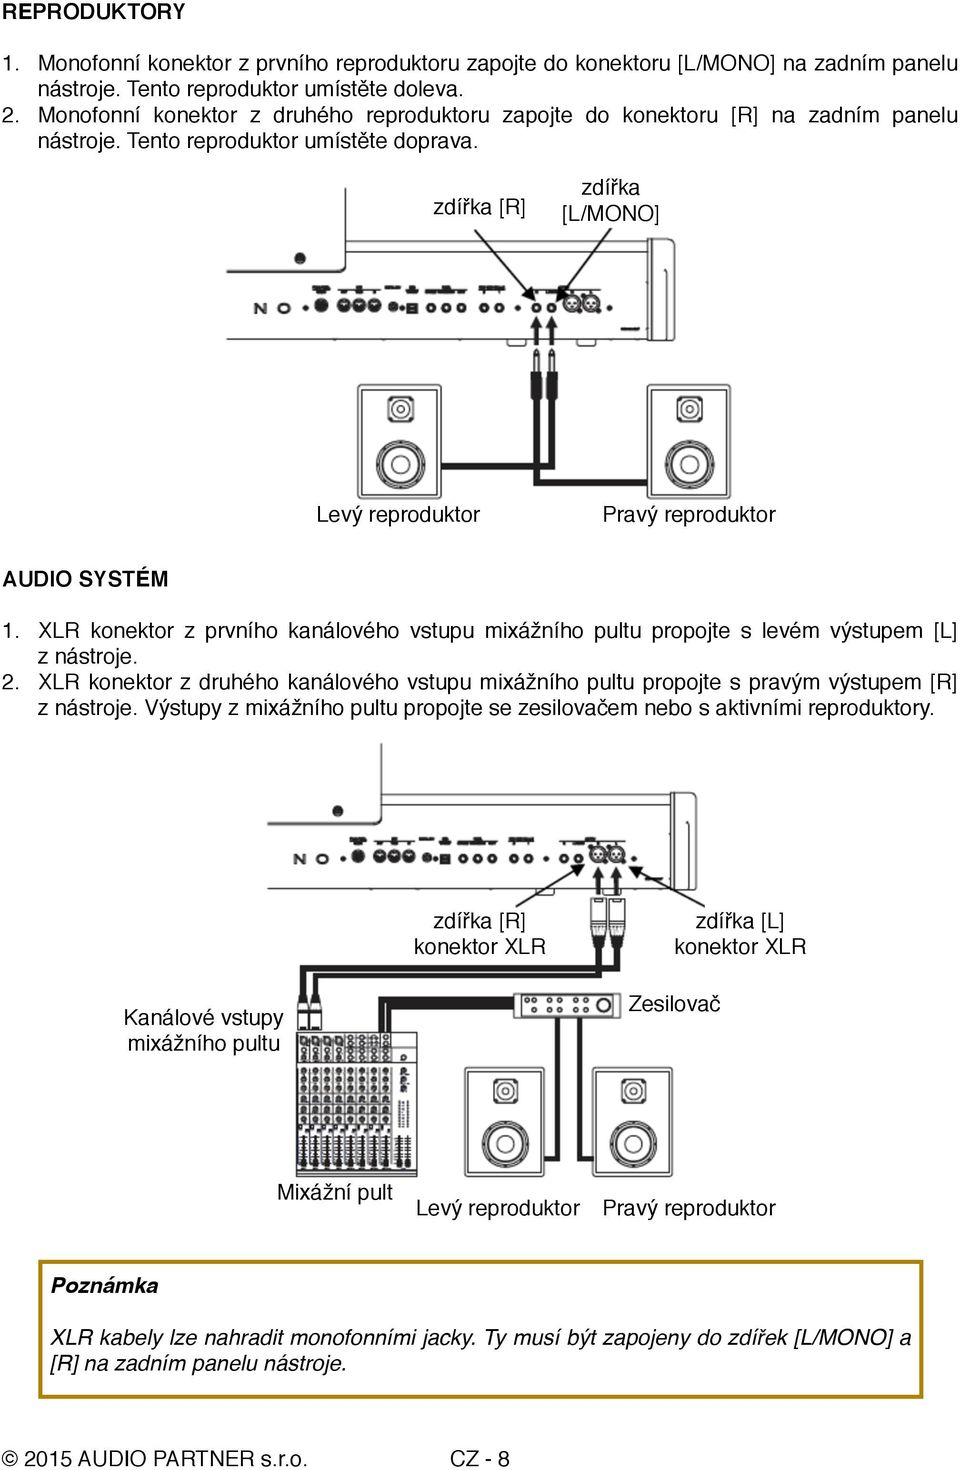 zdířka [R] zdířka [L/MONO] Levý reproduktor Pravý reproduktor AUDIO SYSTÉM 1. XLR konektor z prvního kanálového vstupu mixážního pultu propojte s levém výstupem [L] z nástroje. 2.